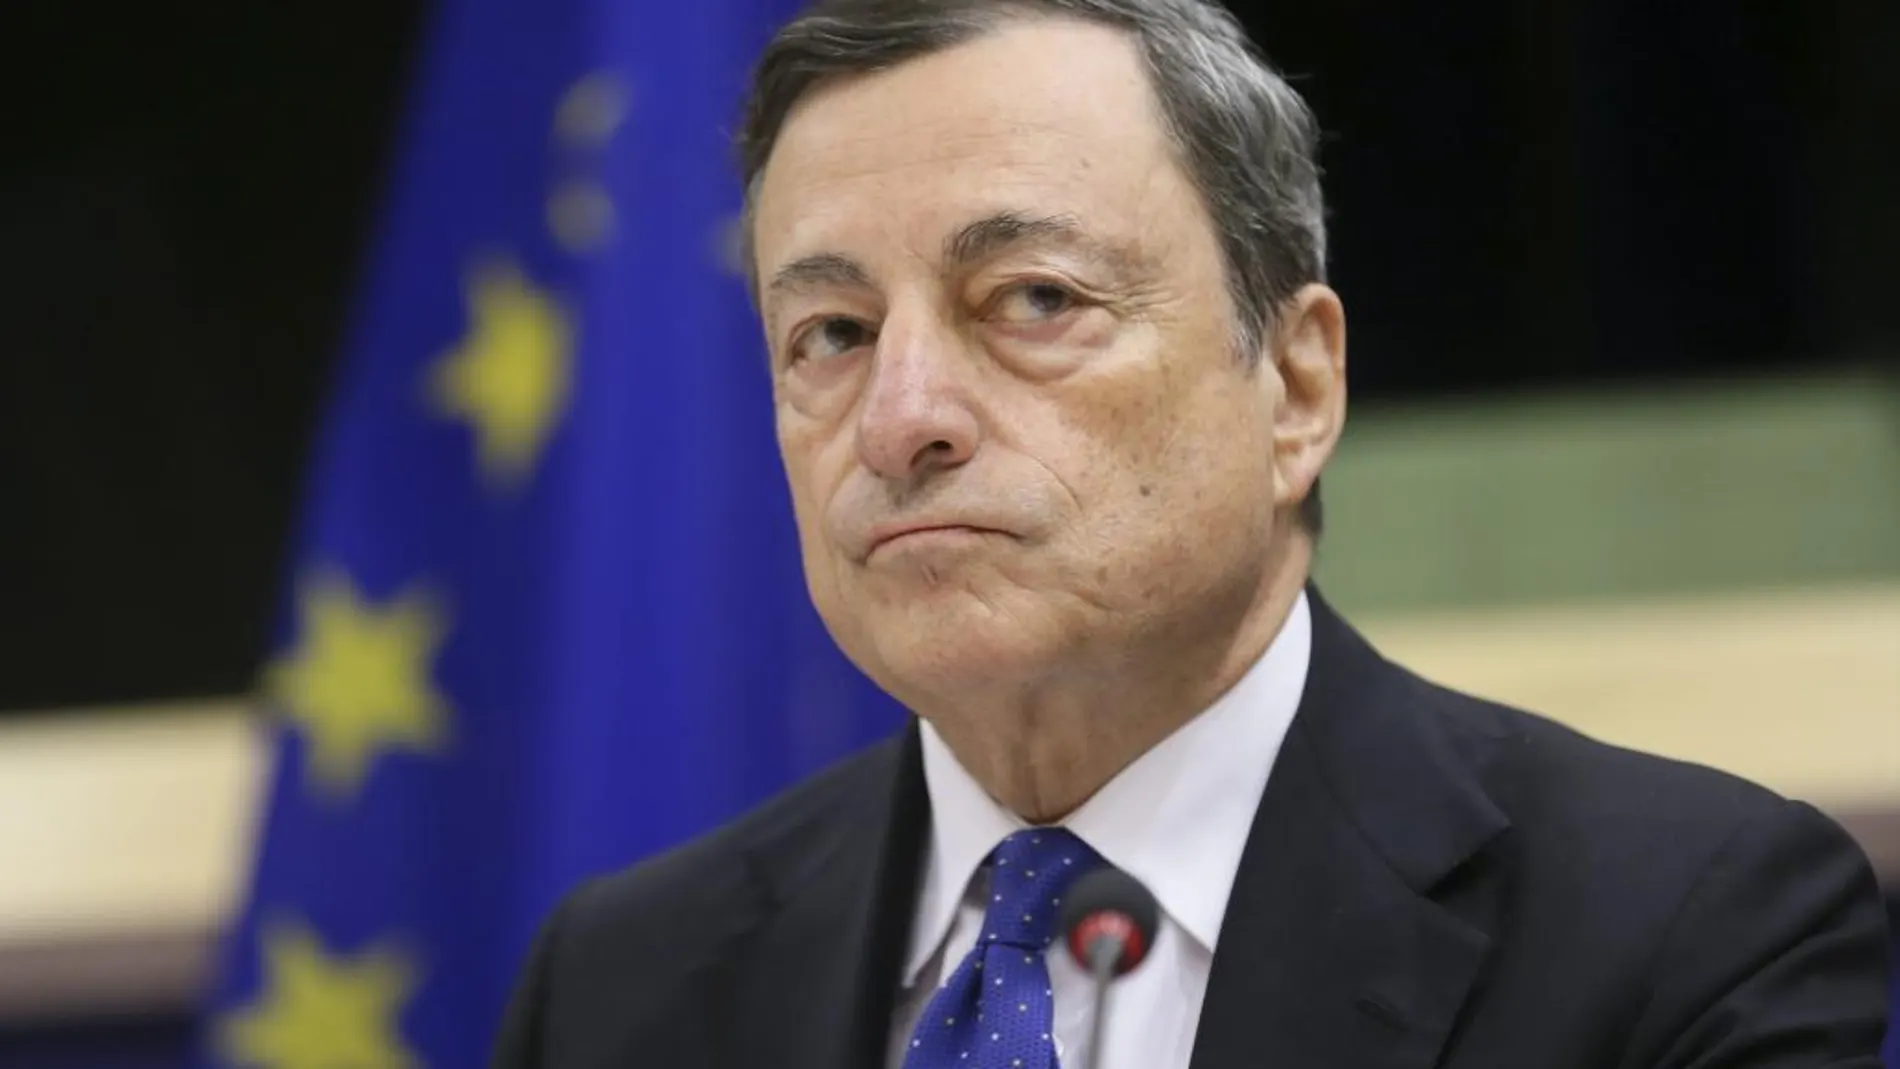 El presidente del BCE, Mario Draghi, asiste a la Comisión de Asuntos Económicos y Monetarios del Parlamento Europeo.